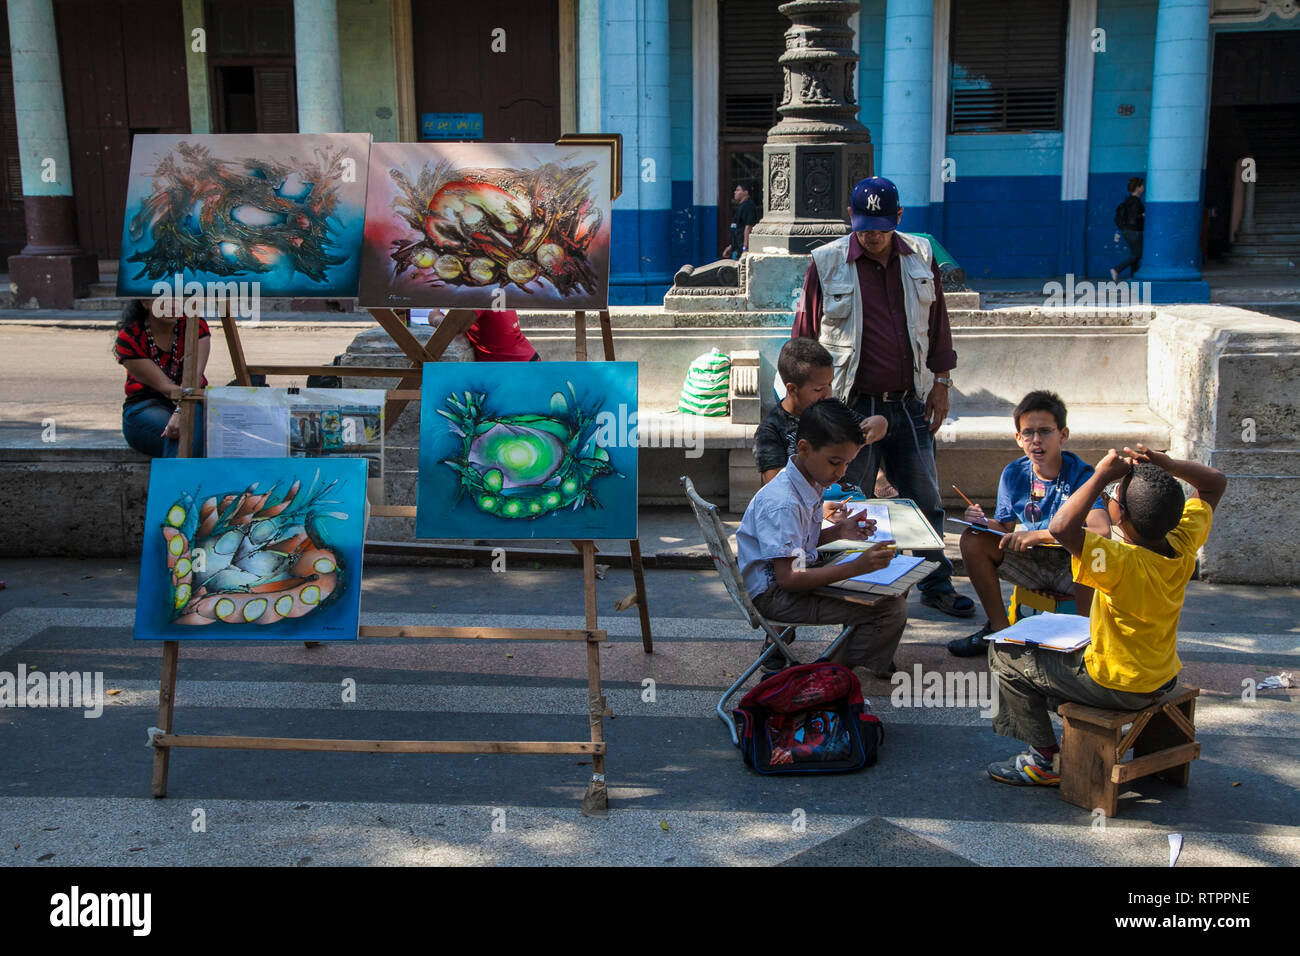 L'Avana, Cuba - 20 Gennaio 2013: una vista delle strade della città con il popolo cubano. Gli artisti cubani presentano i loro lavori sulla strada. Foto Stock